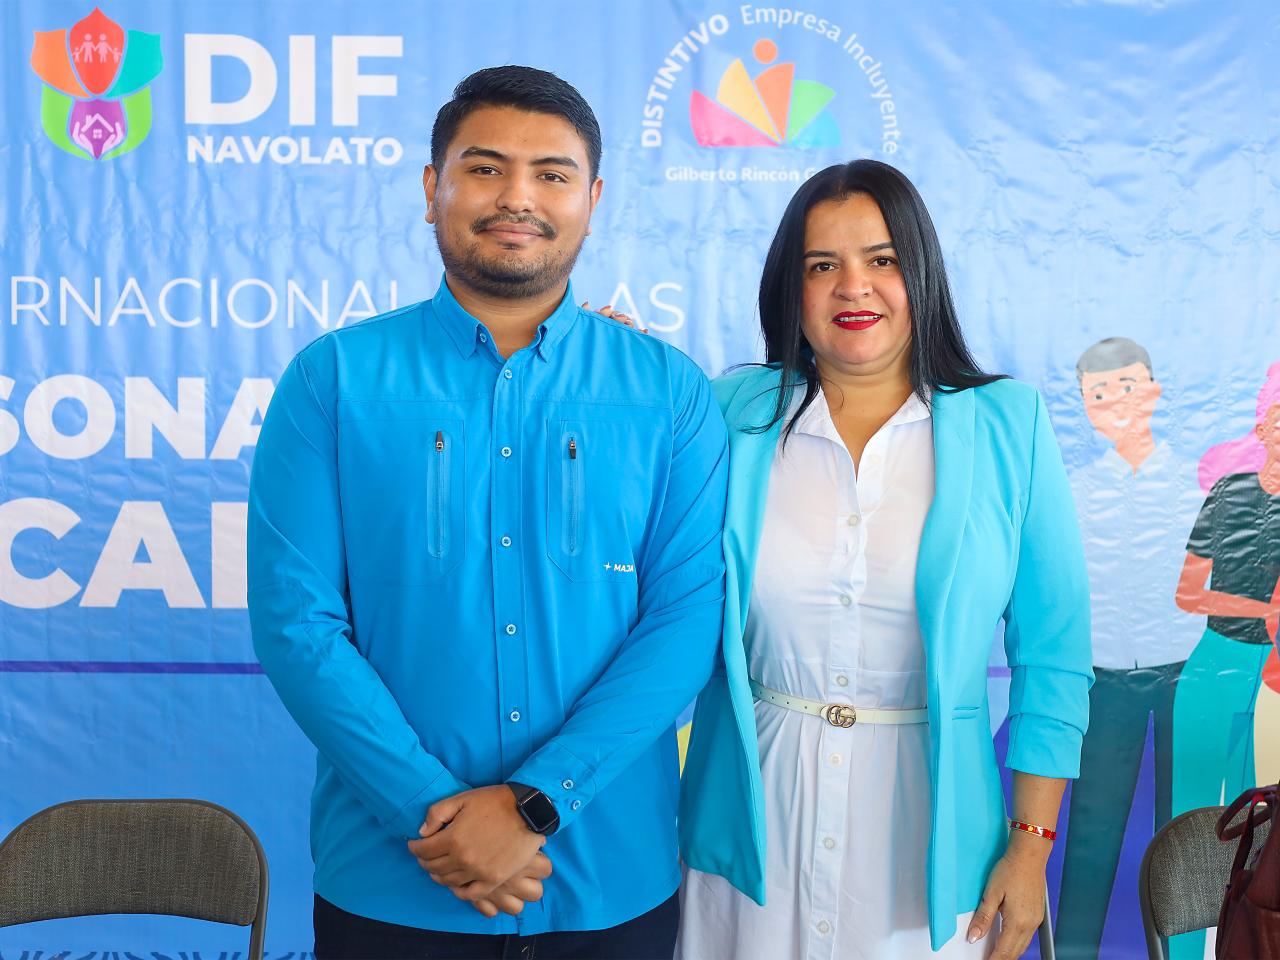 La alcaldesa de Navolato reiteró todo su apoyo a las personas con discapacidad, durante las actividades que se llevaron a cabo en conmemoración al Día Internacional de las Personas con Discapacidad.